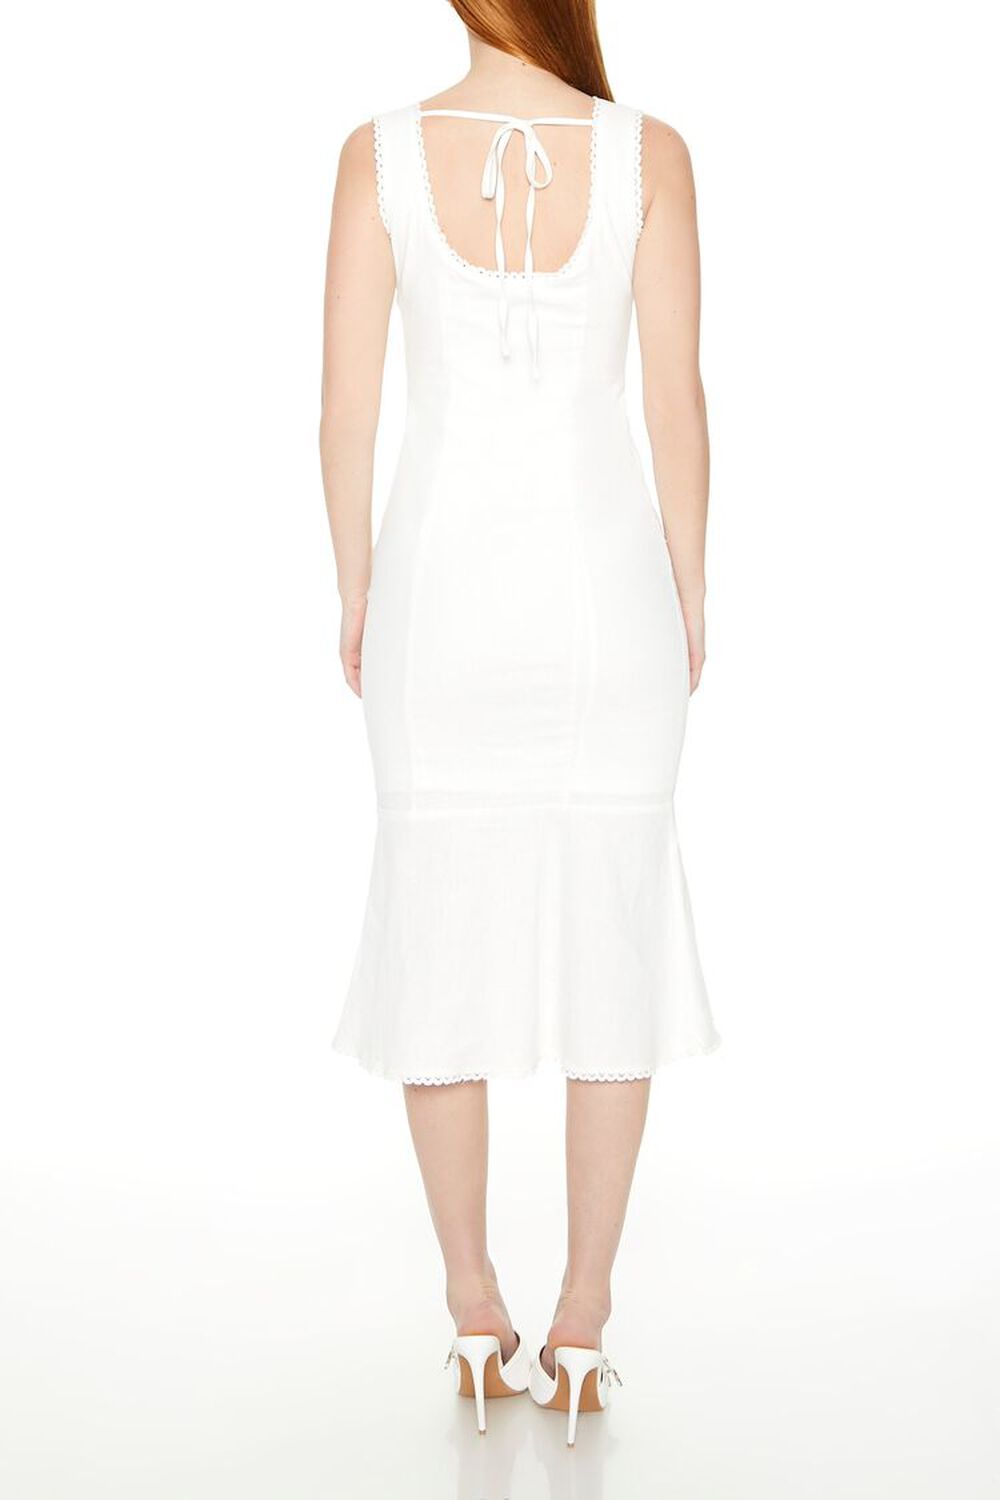 WHITE Lace-Up Mermaid Midi Dress, image 3